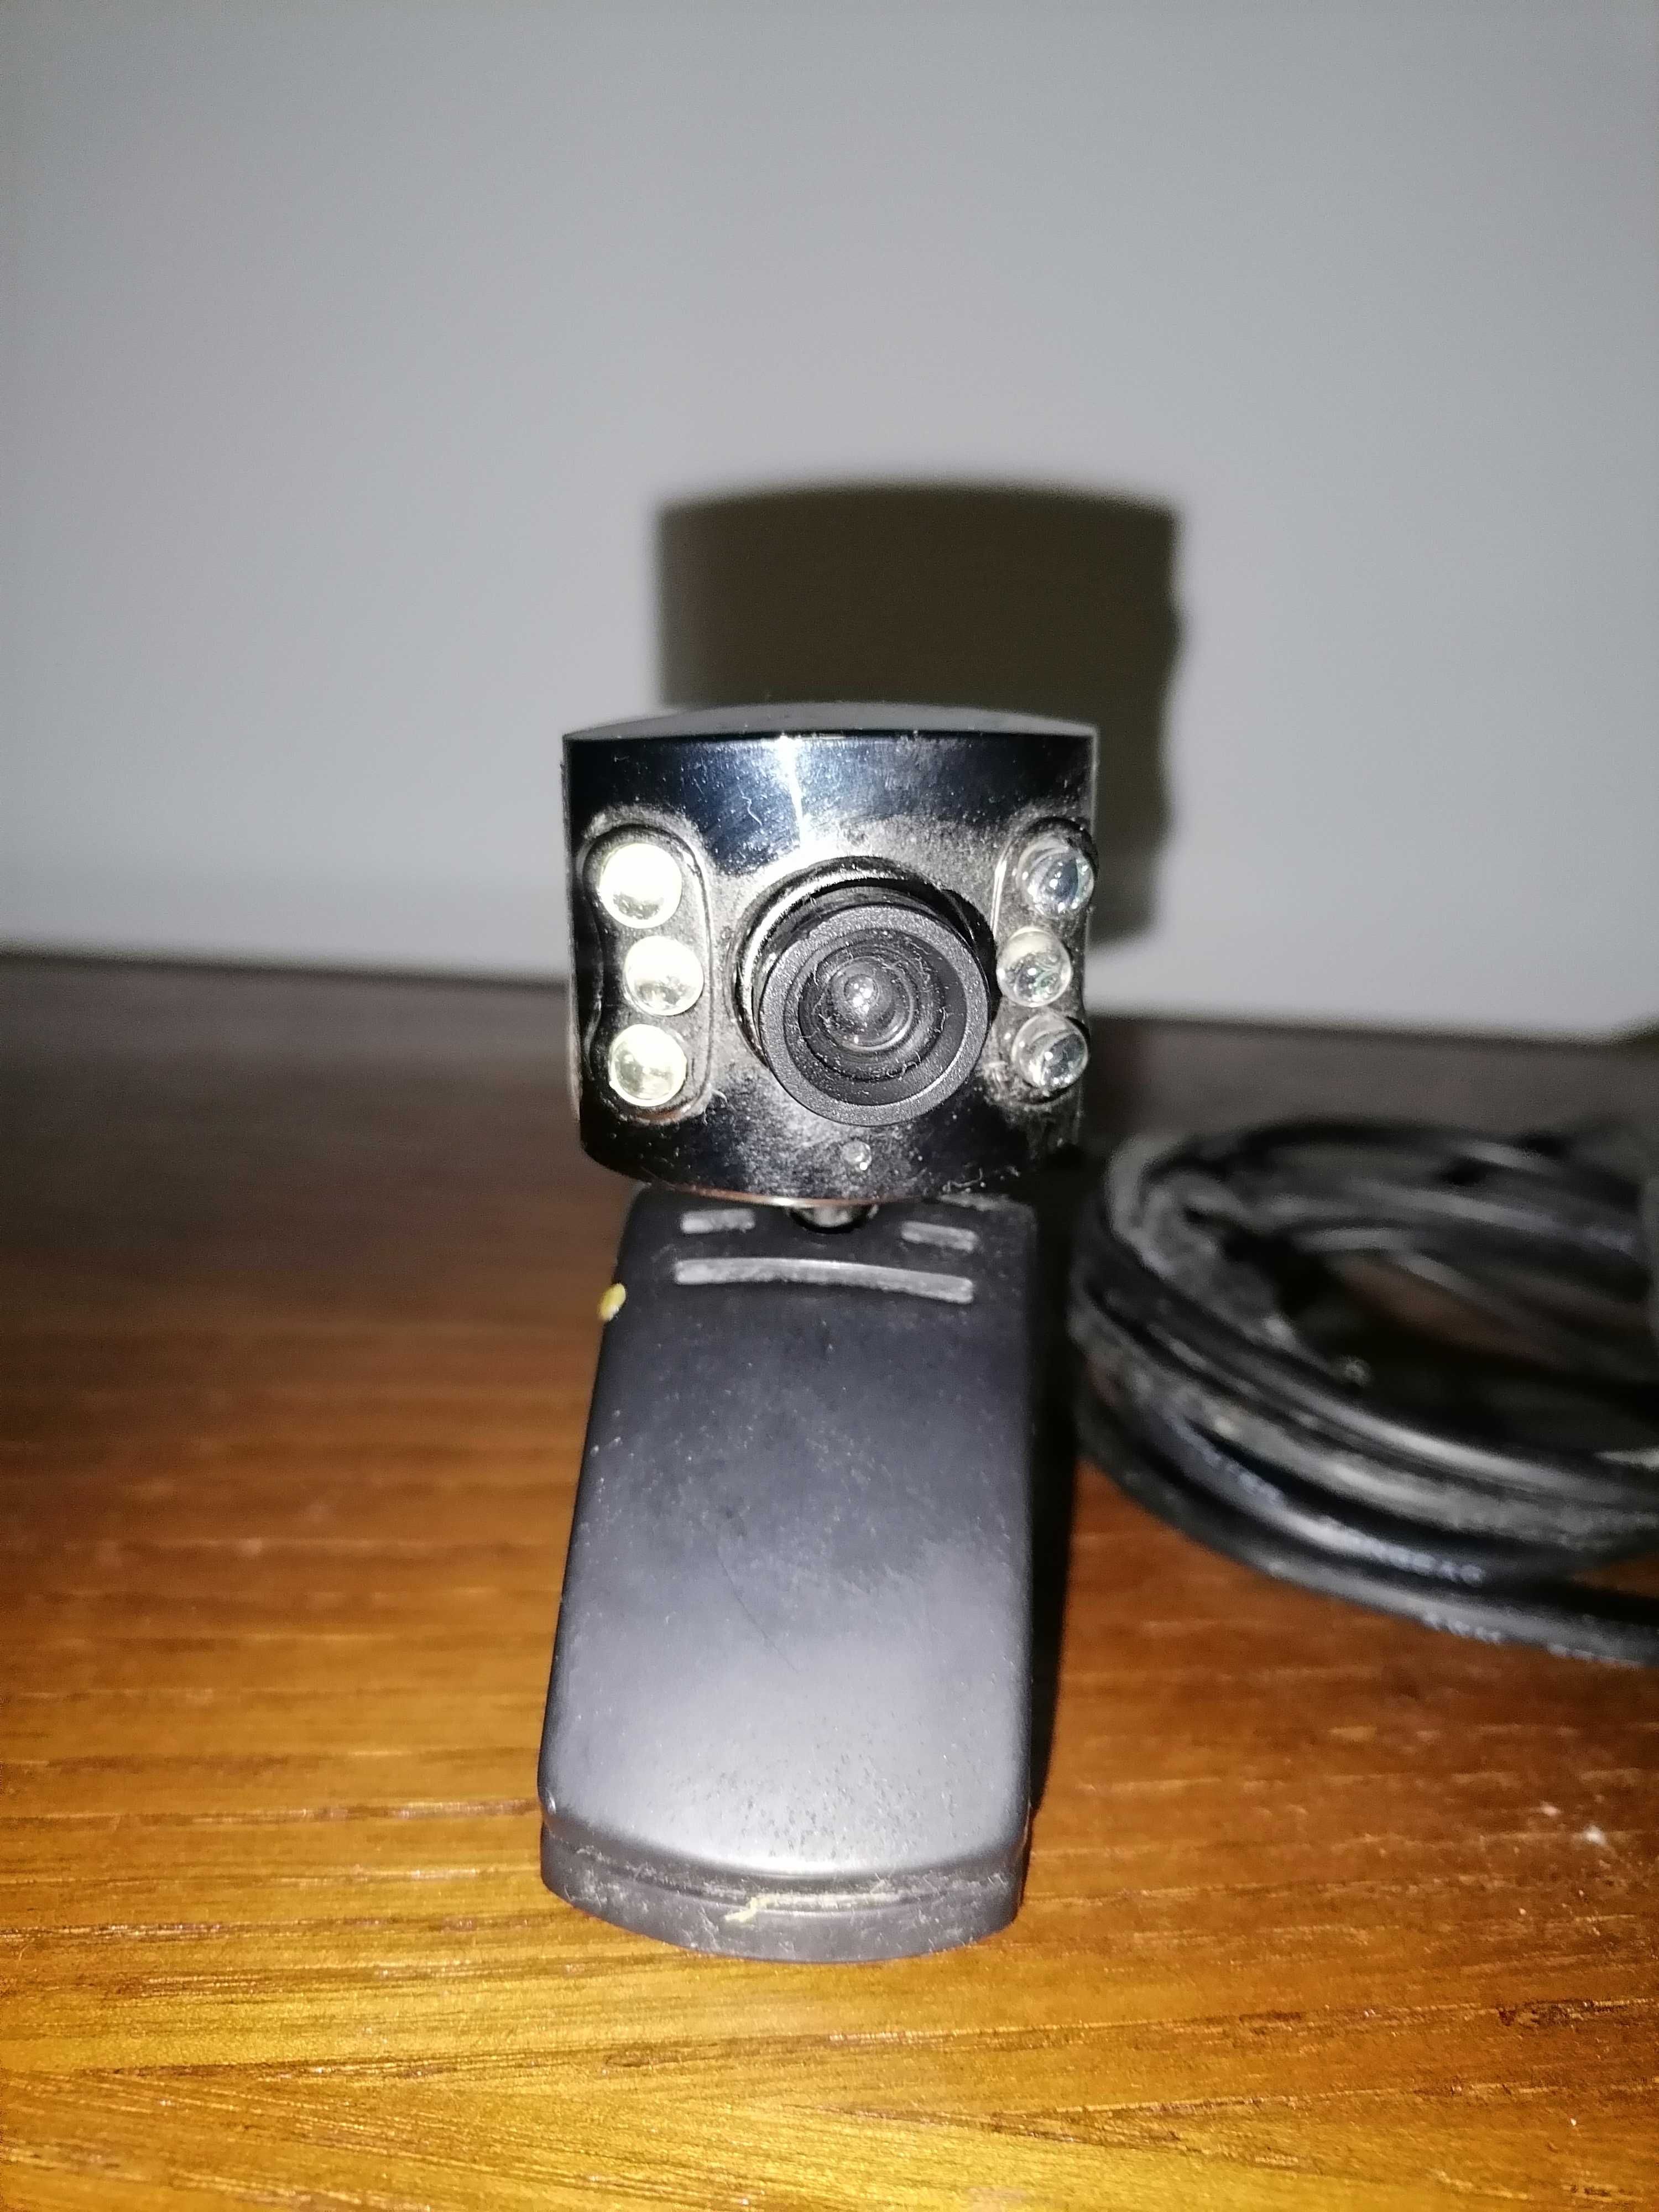 Webcam usada em bom estado